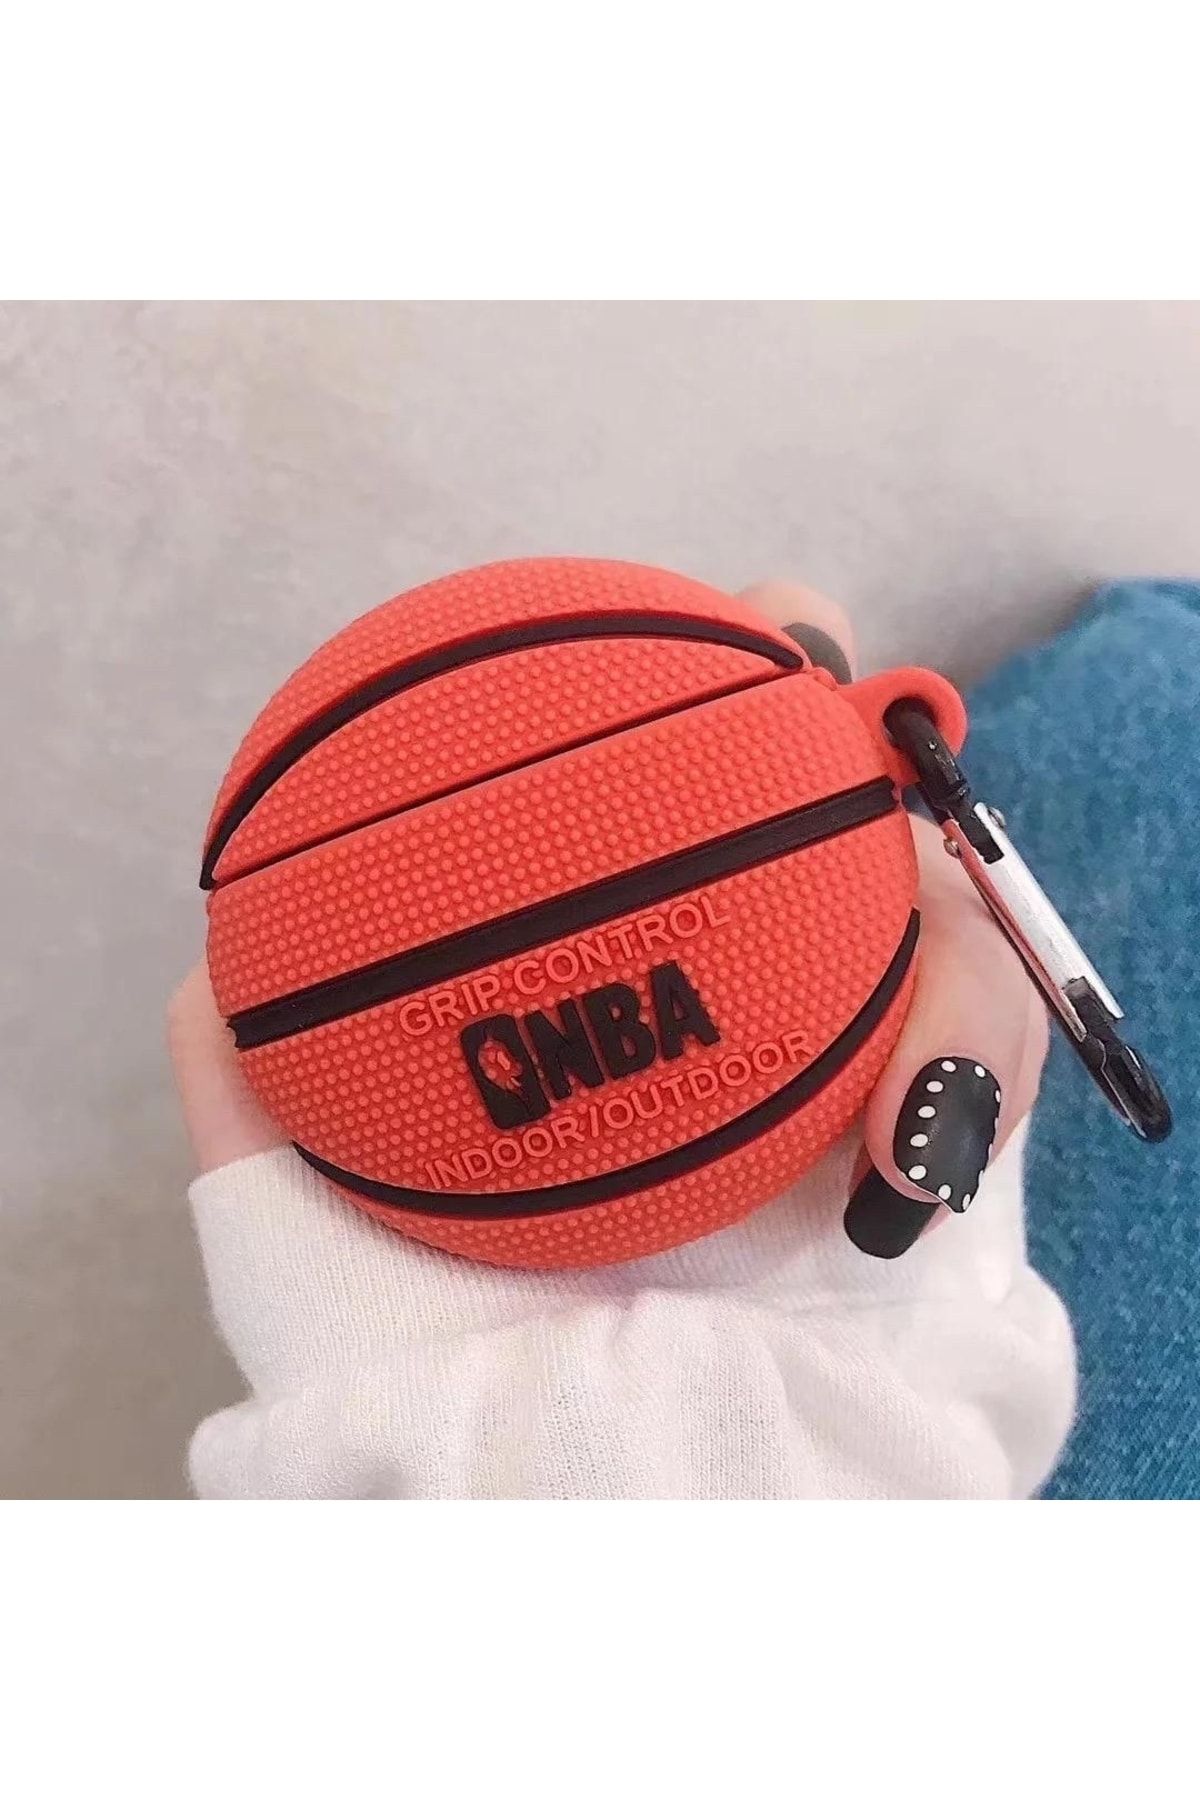 QUEEN AKSESUAR 1 2 Kablosuz Kulaklık  Kılıfı Silikon Kapak Askılı Nba Basketbol Topu